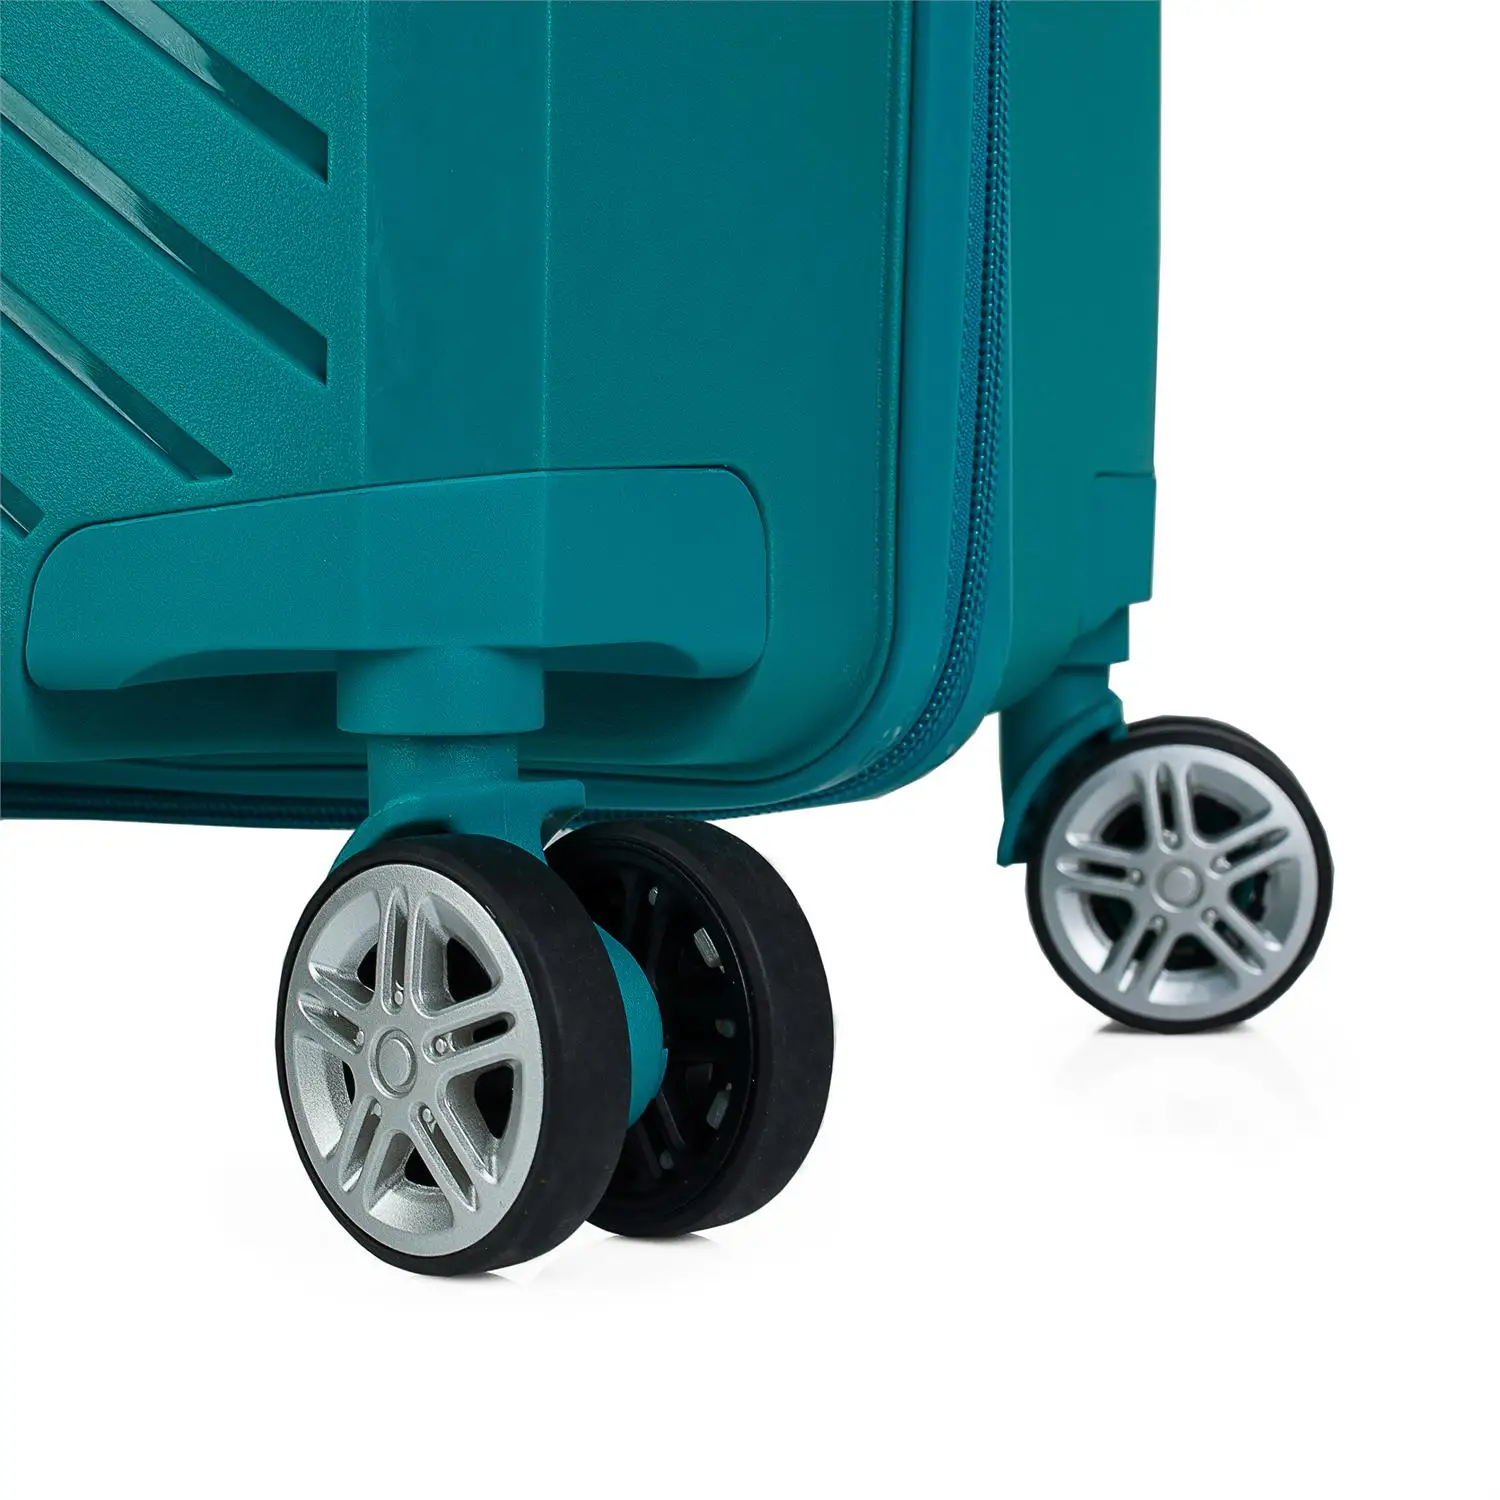 Багажный набор 4 колеса ABS тележка навесной замок TSA. Комплект из 2 размеров: средний и большой. Устойчивый к Rígi